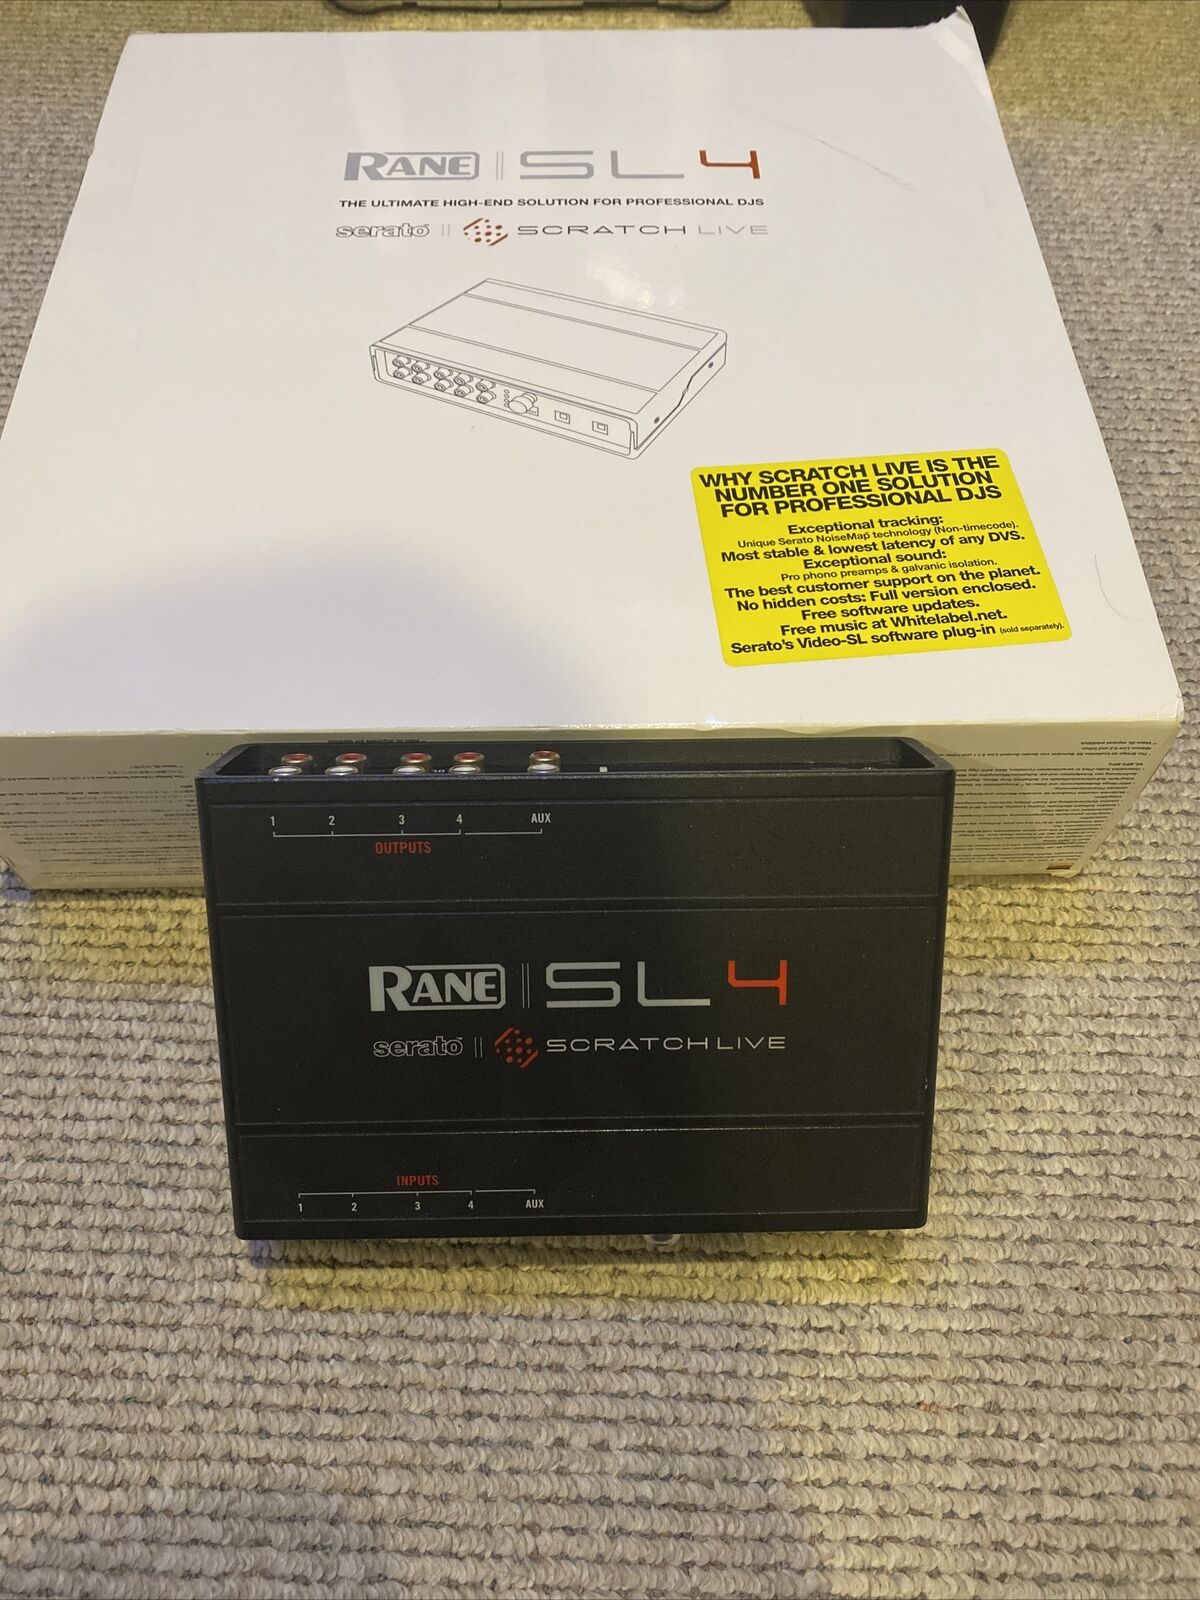 Rane Serato Sl4 Plus With Control Vinyl. 4 Channel Controller In Original Box